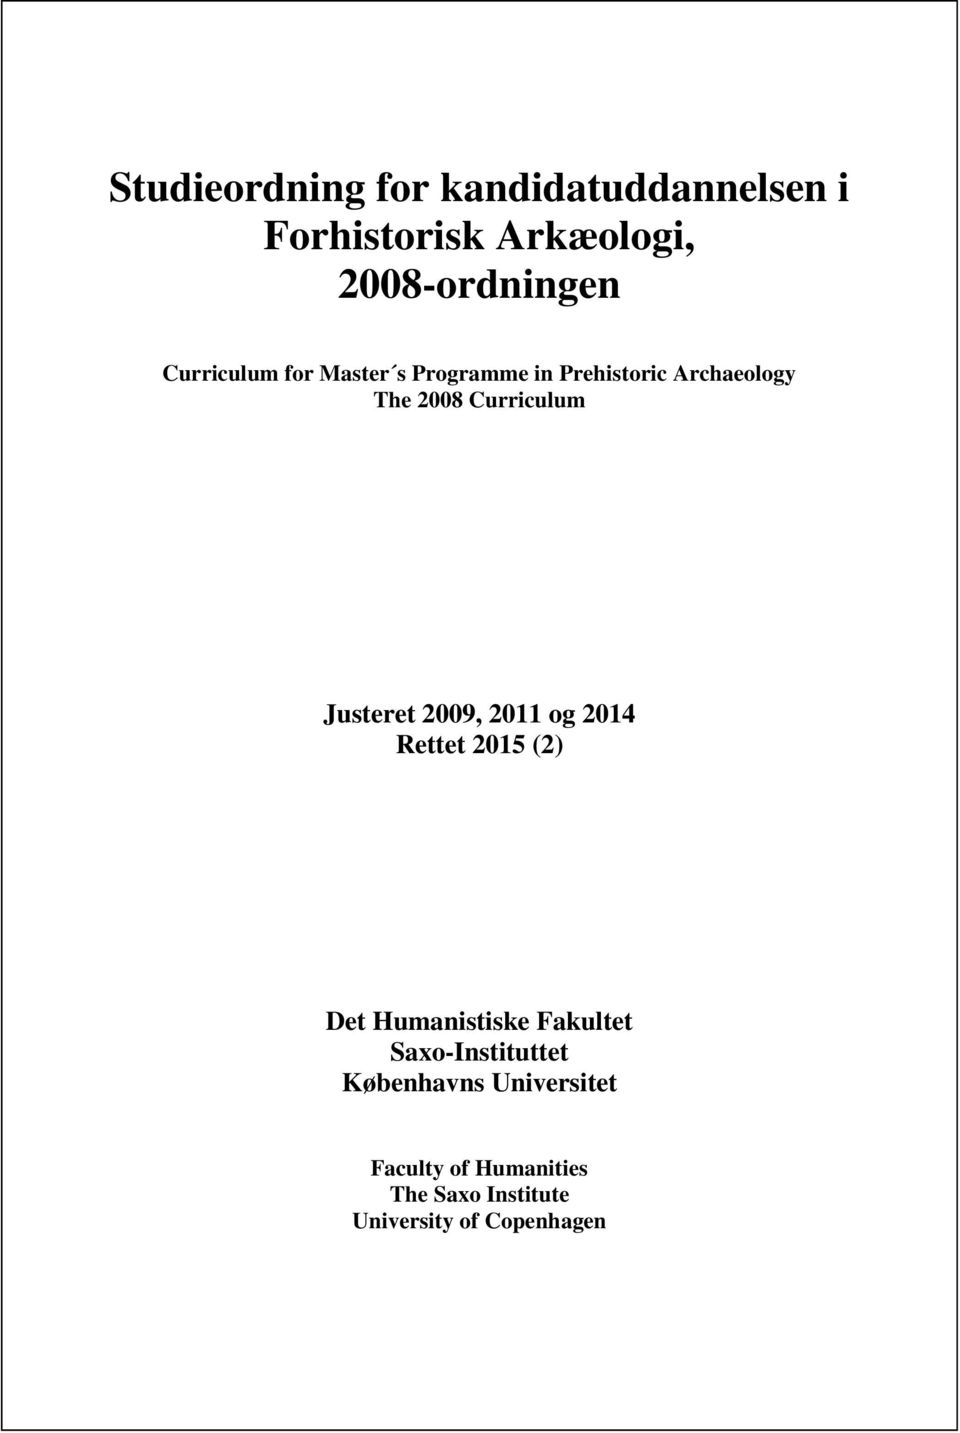 Curriculum Justeret 2009, 2011 og 2014 Rettet 2015 (2) Det Humanistiske Fakultet